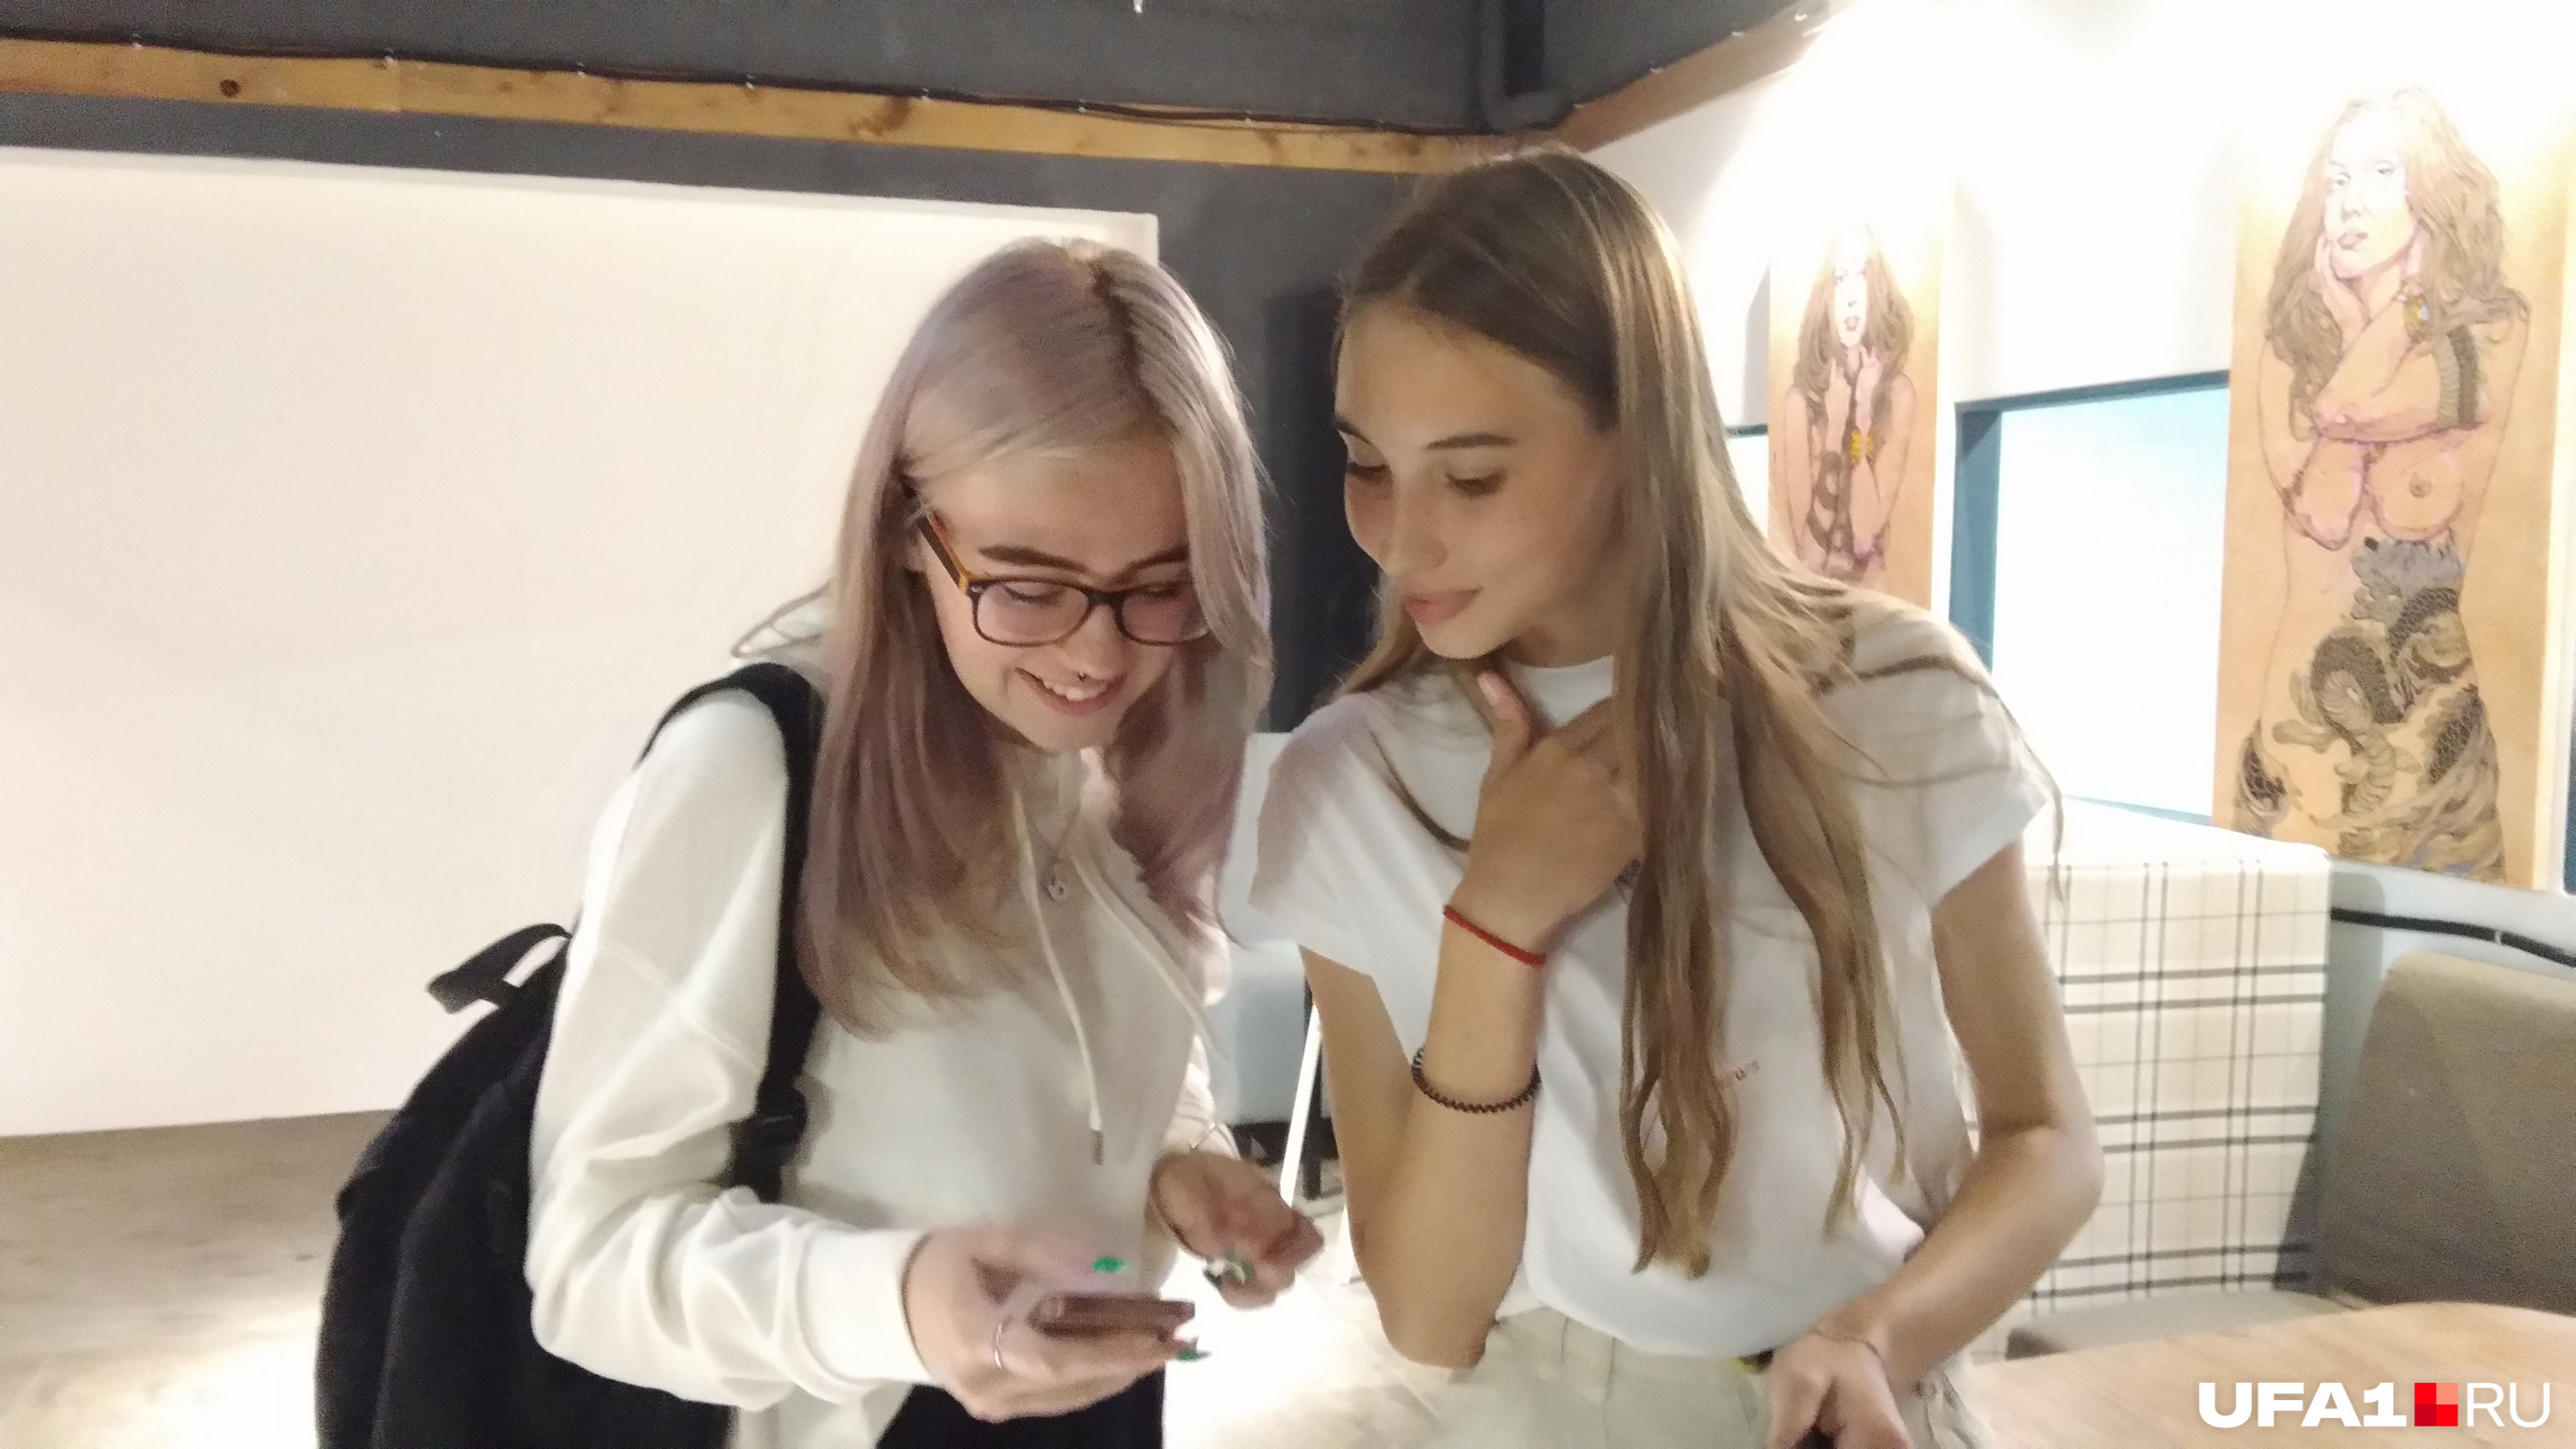 Снимать видео для роликов в Instagram Арине помогает ее подруга